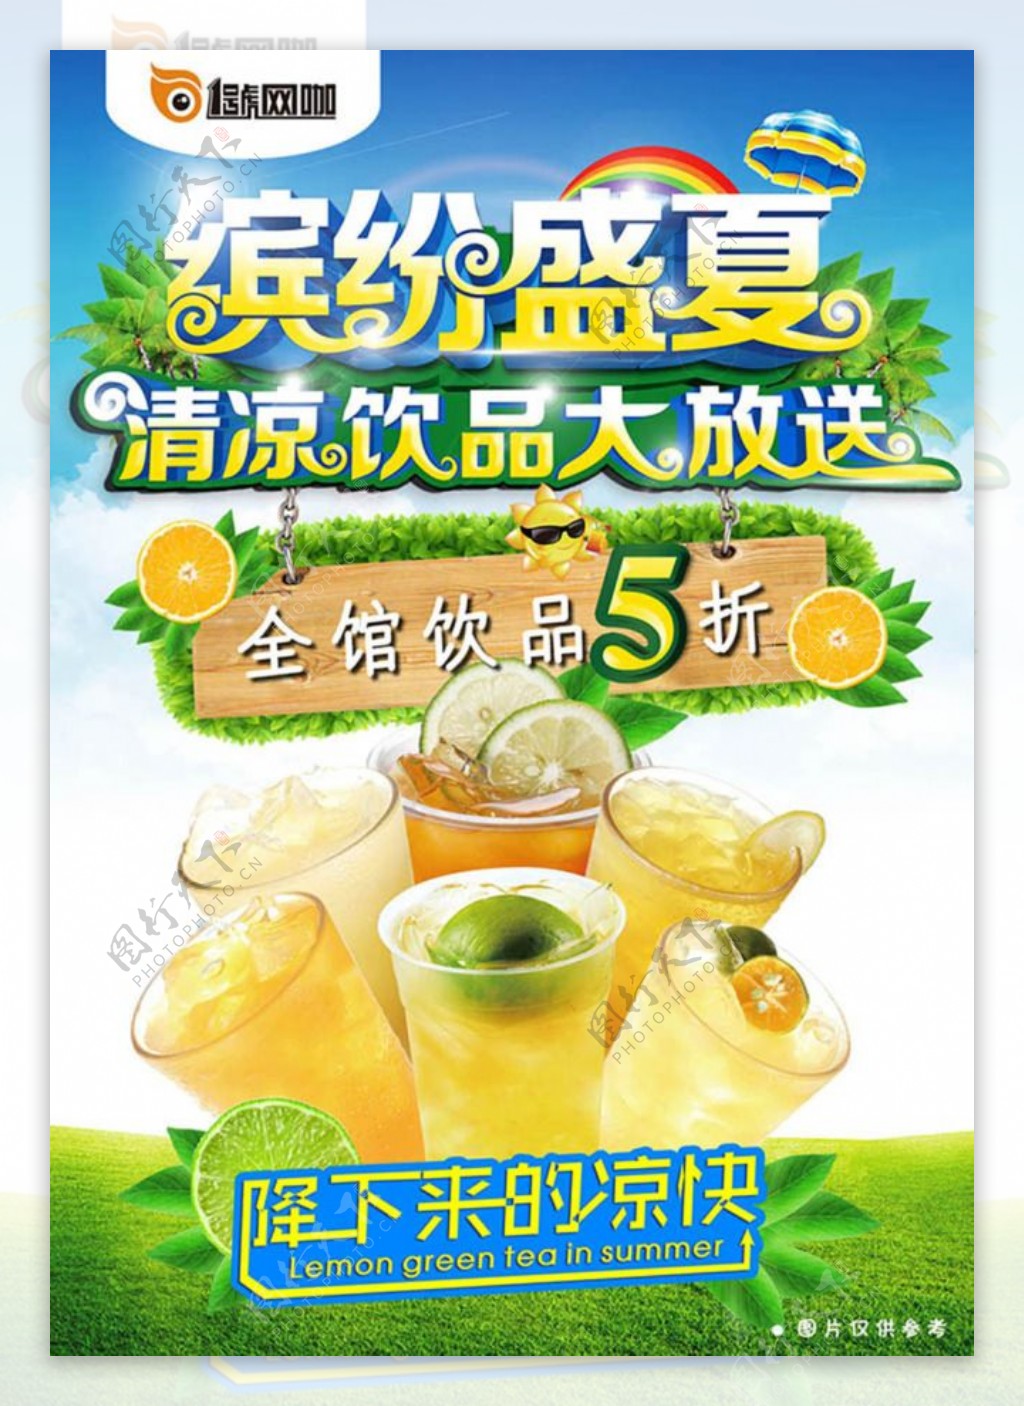 夏季饮品大放送海报设计PSD源文件下载